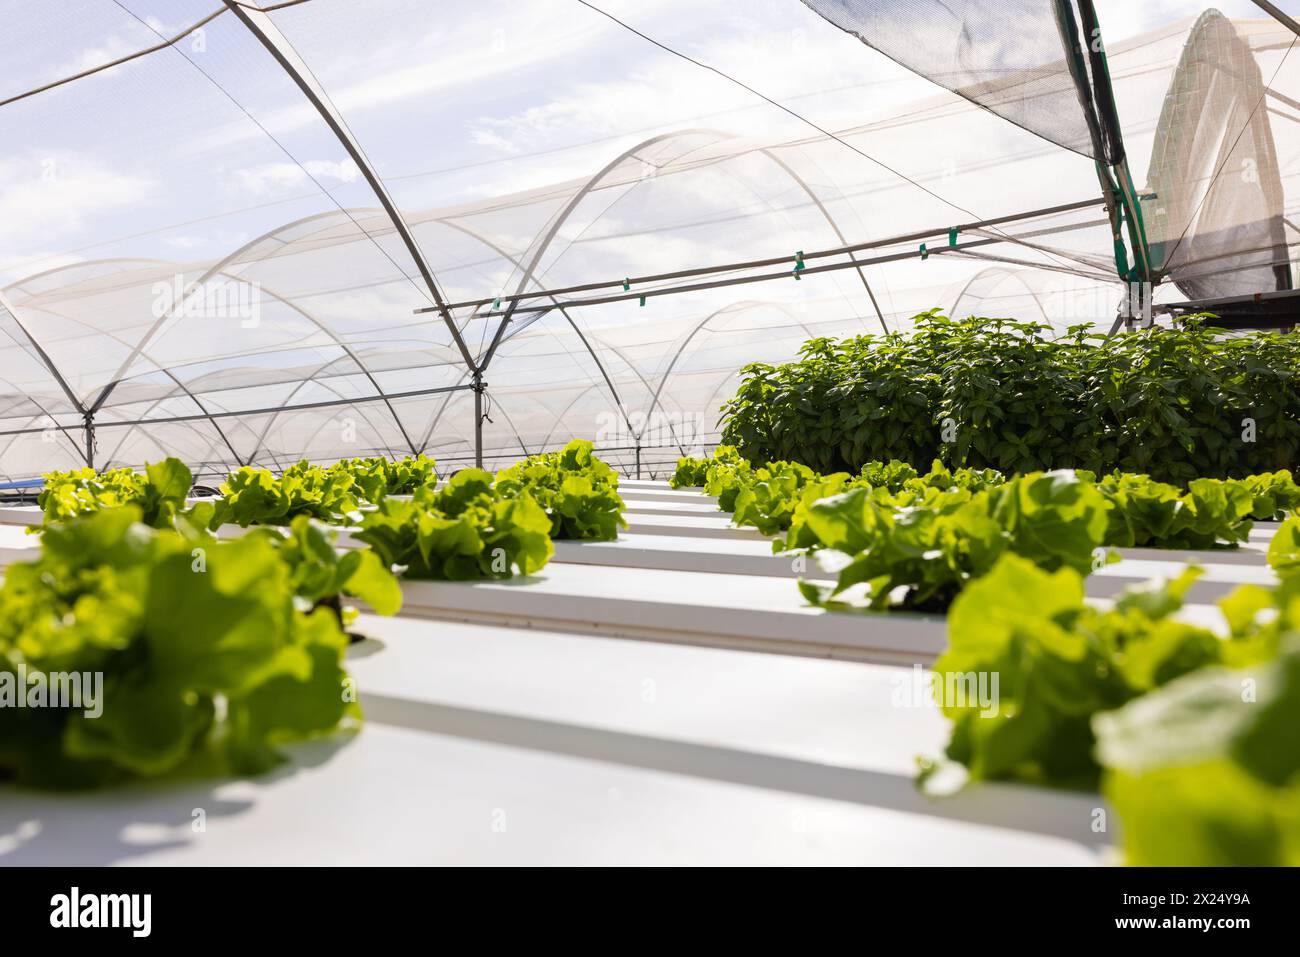 Les plantes vertes feuillues poussent en rangées dans une ferme hydroponique dans une serre, sous une canopée transparente Banque D'Images